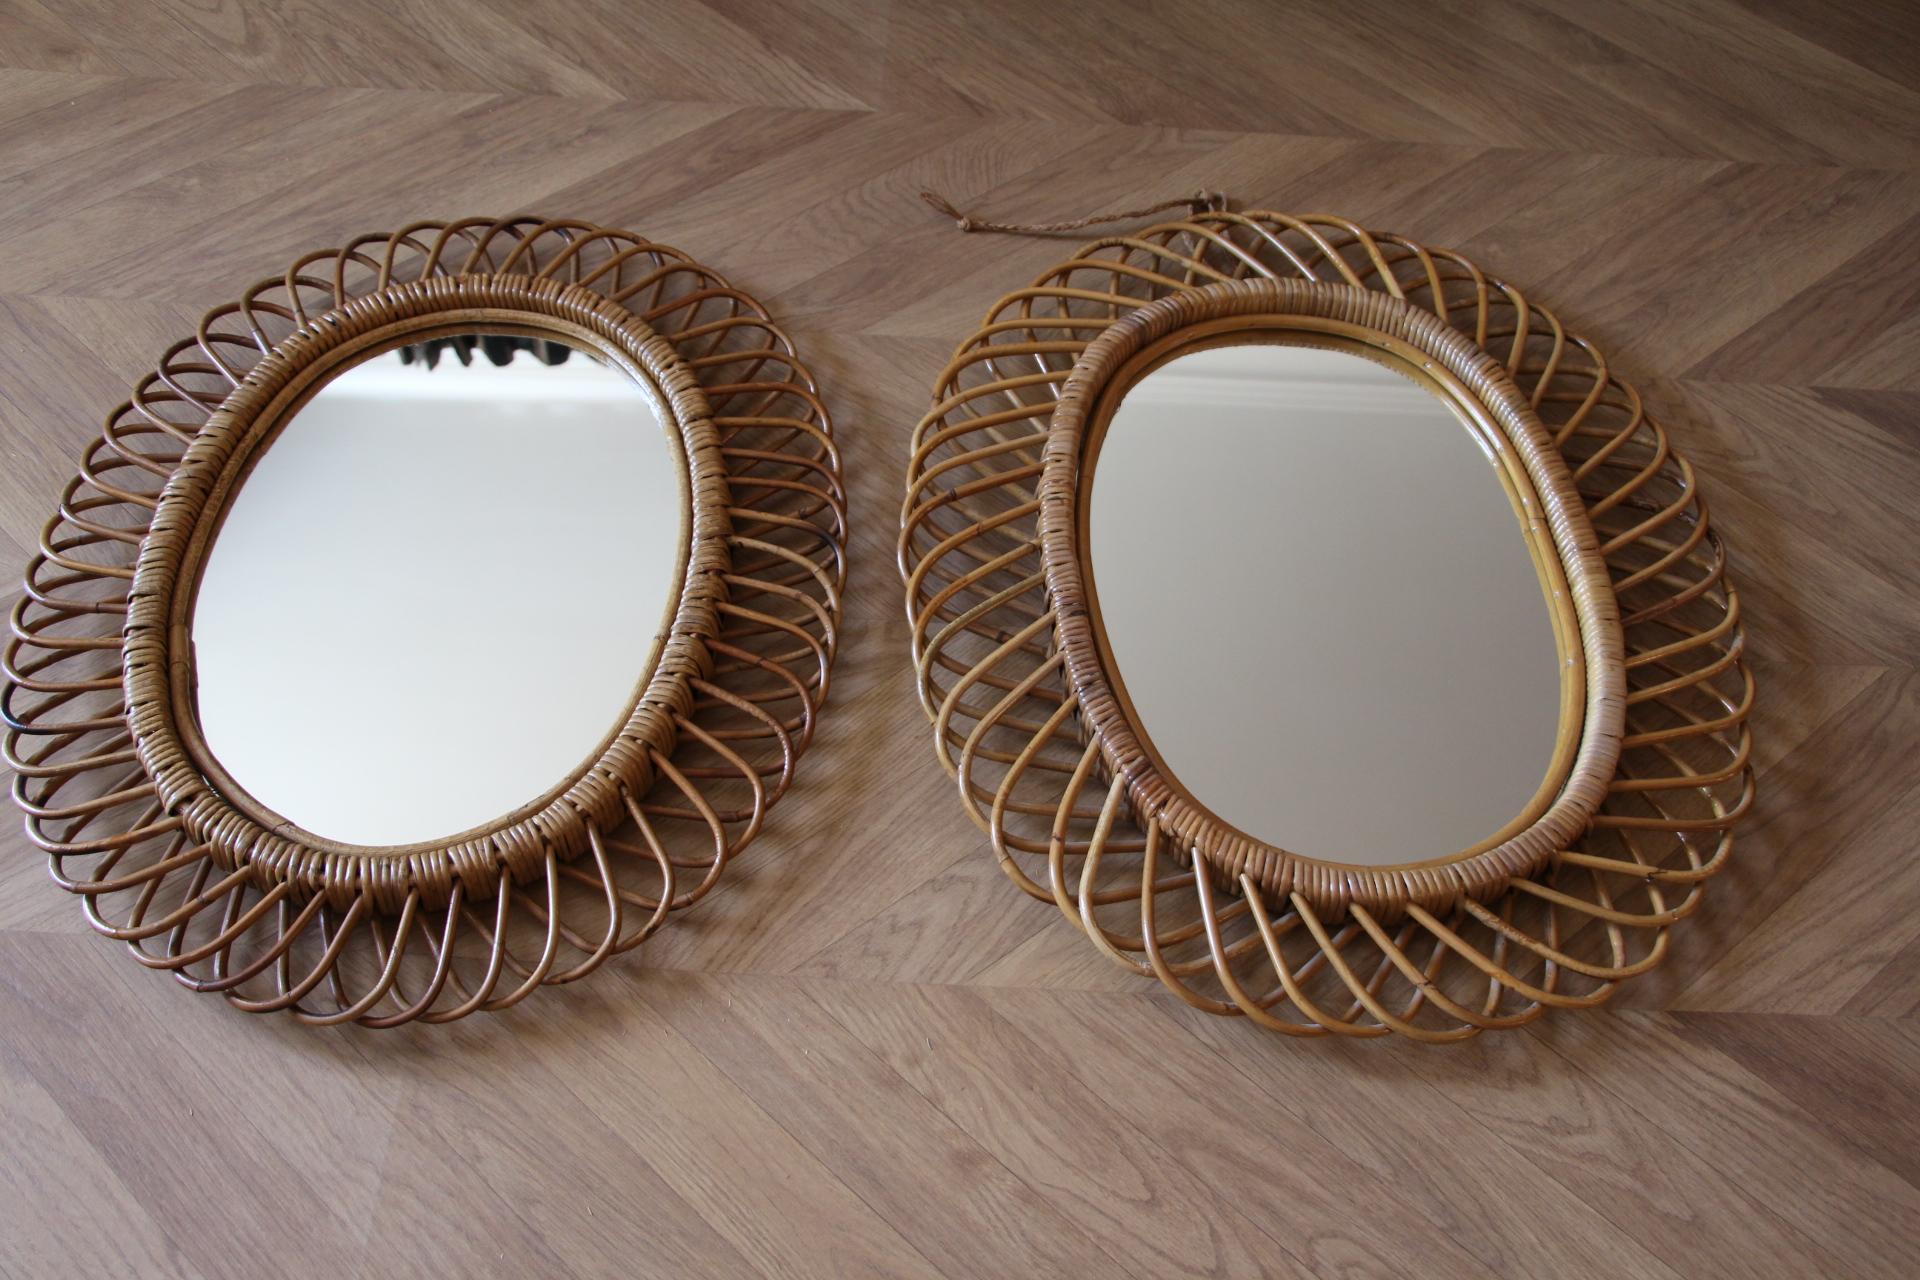 Ces miroirs très décoratifs ont été fabriqués en Italie dans les années 60.Il est très rare de trouver une paire.Veuillez noter que bien qu'il s'agisse d'une paire, ils sont légèrement différents l'un de l'autre, ce qui est naturel puisqu'ils ont